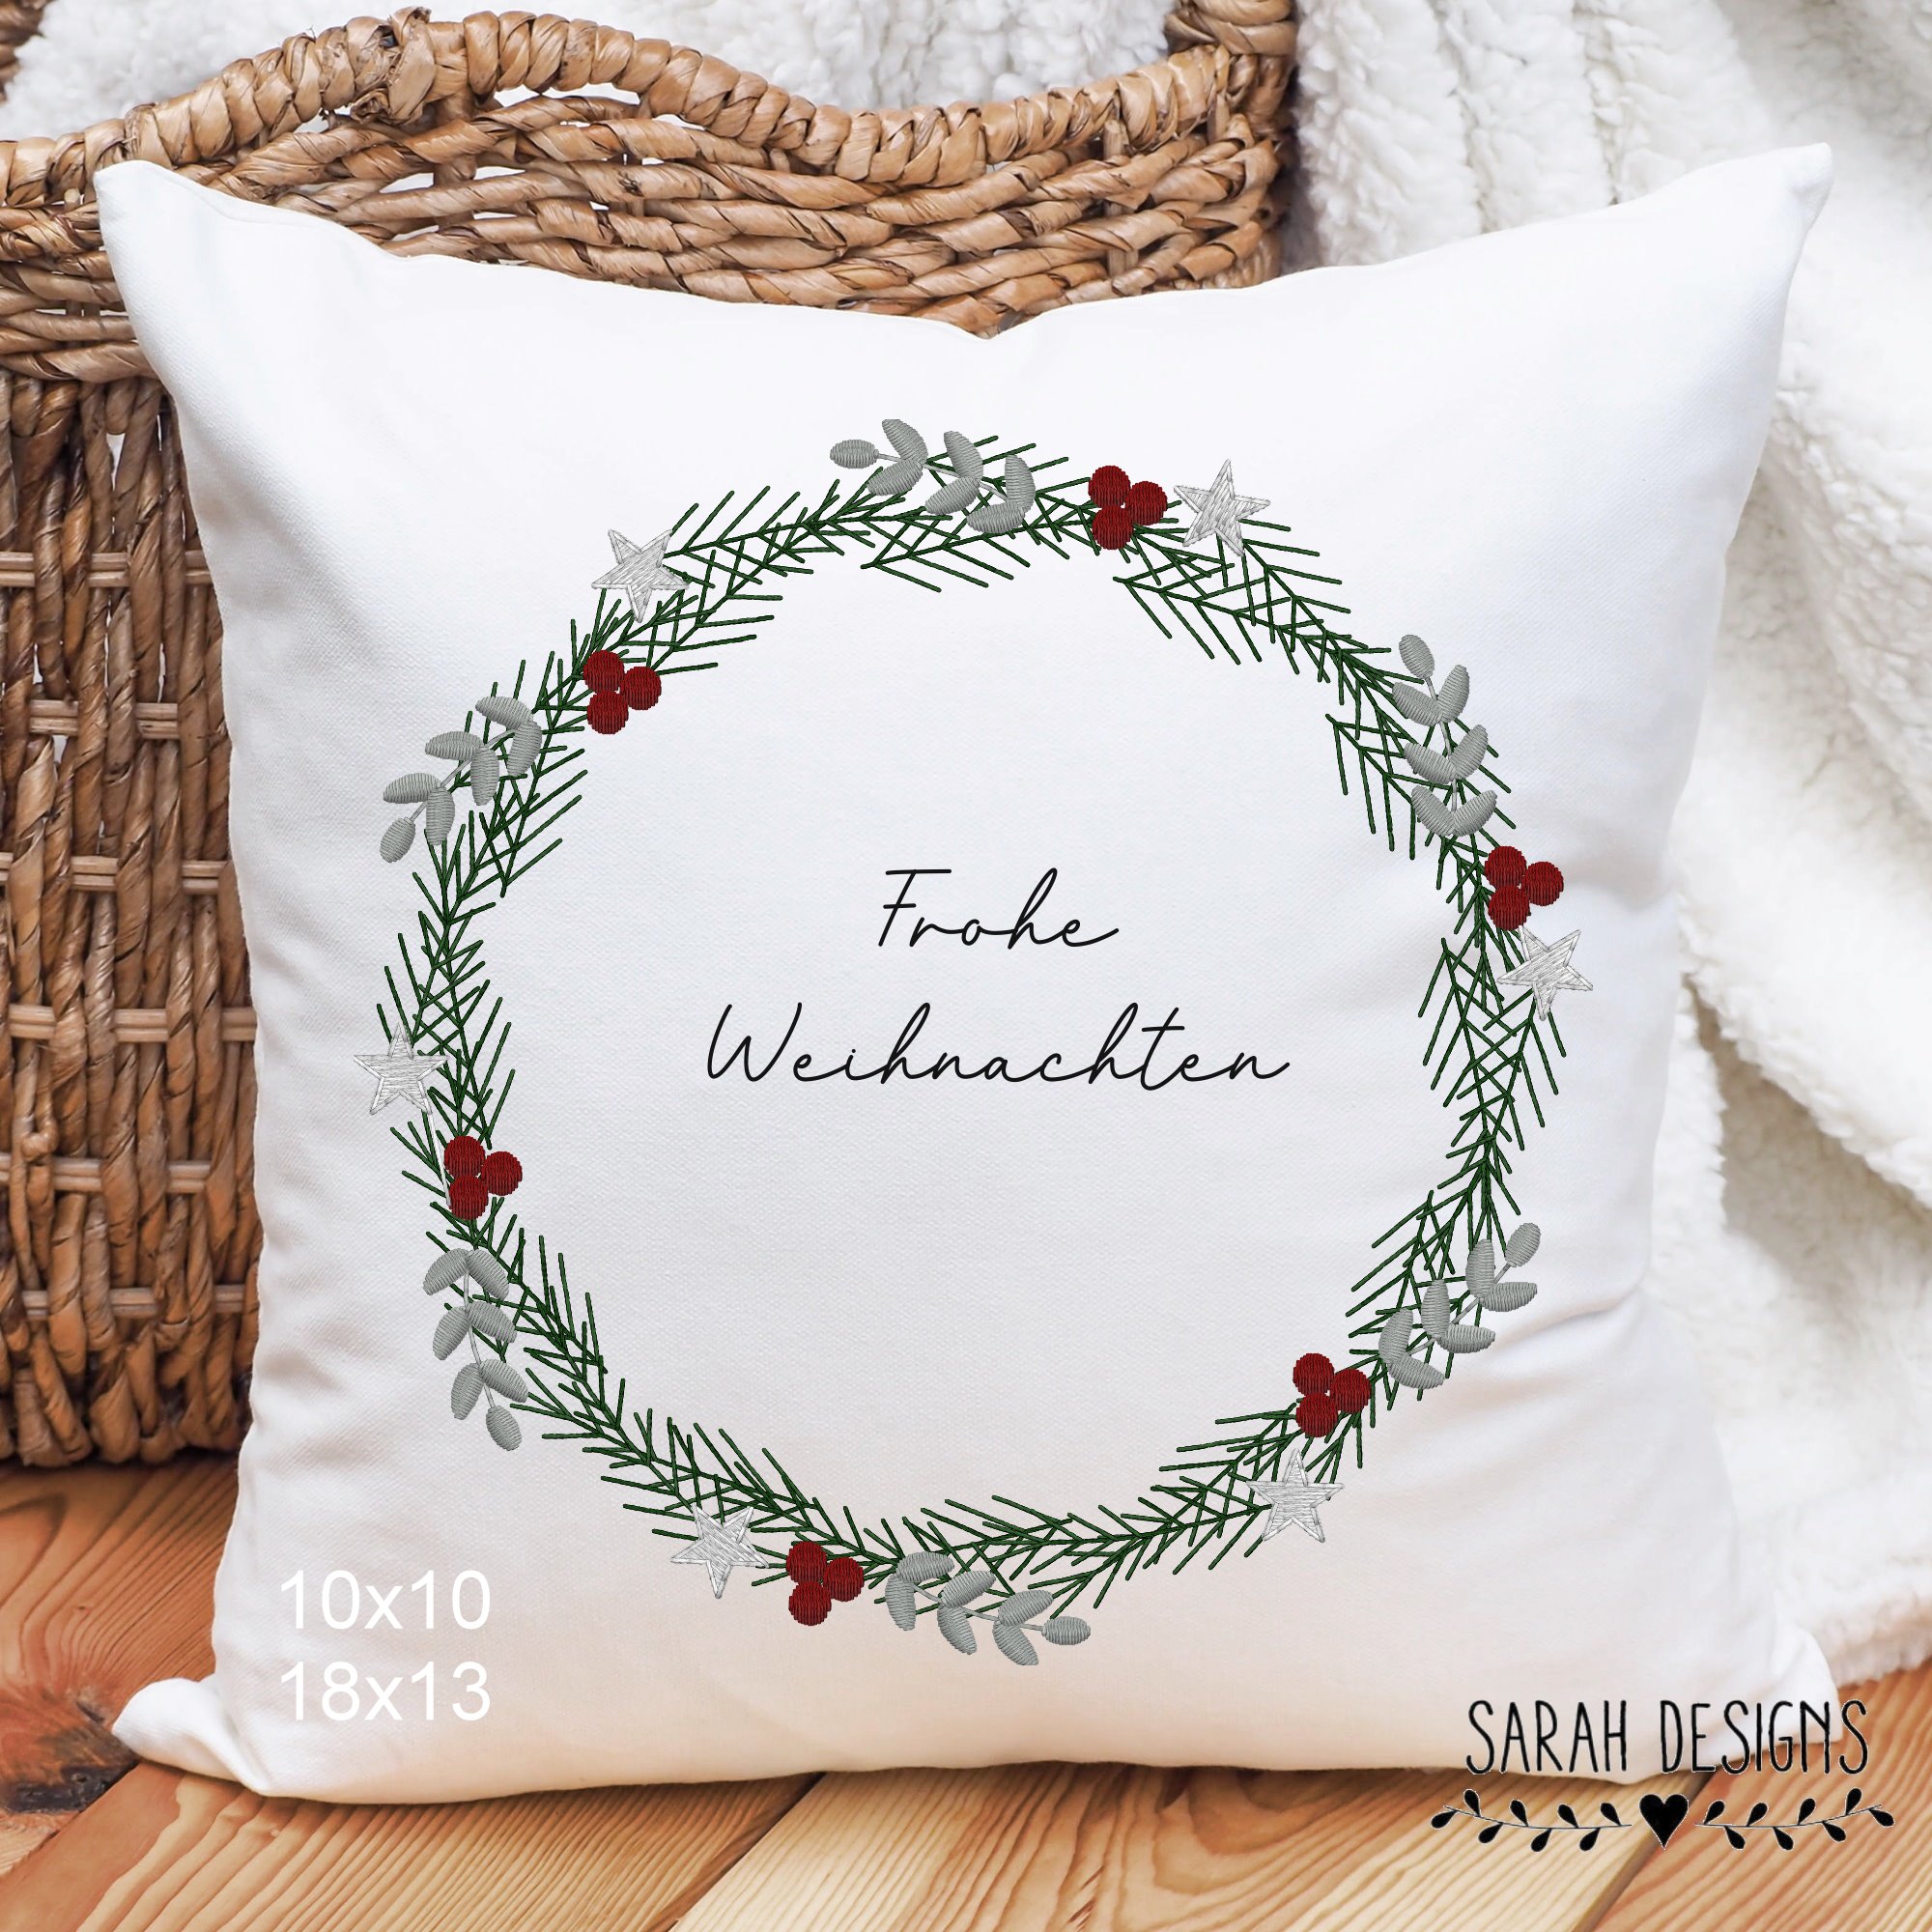 Stickdatei Weihnachtskranz Kranz Weihnachten Embroidery Design Christmas Wreath Frohe Weihnachten sticken 10x10 und 18x13